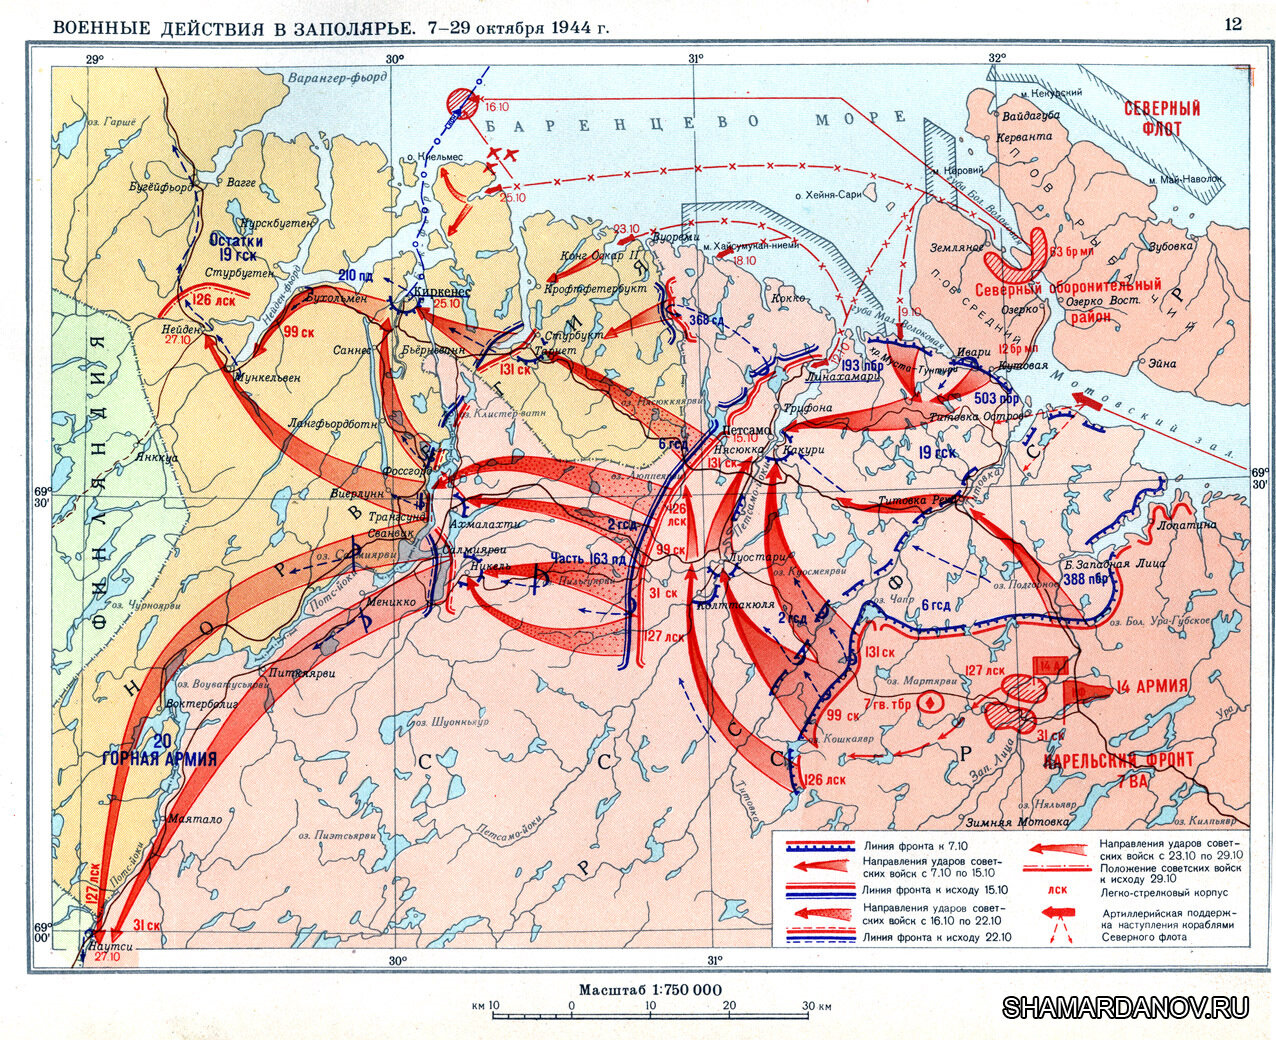 29 июня 1941 года началась битва за Заполярье во время Великой Отечественной войны